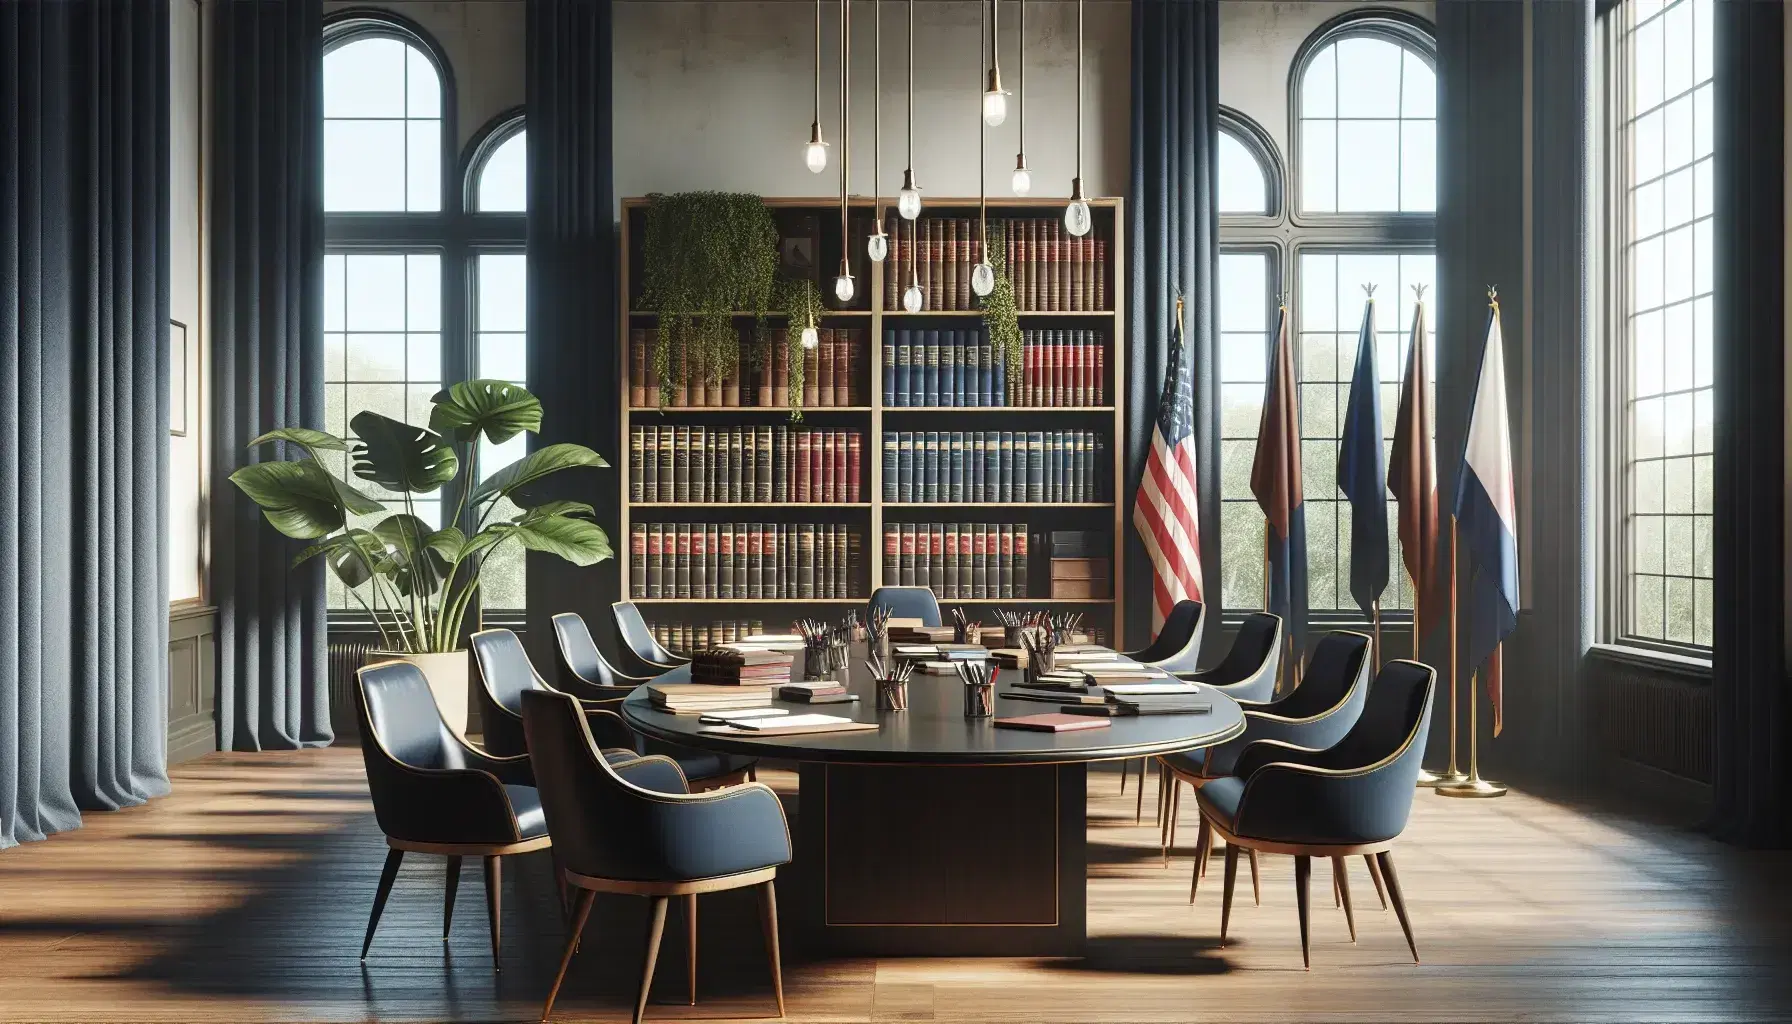 Sala de reuniones iluminada con mesa ovalada de madera, sillas azules, estantería con libros, bandera sin insignias y planta verde.